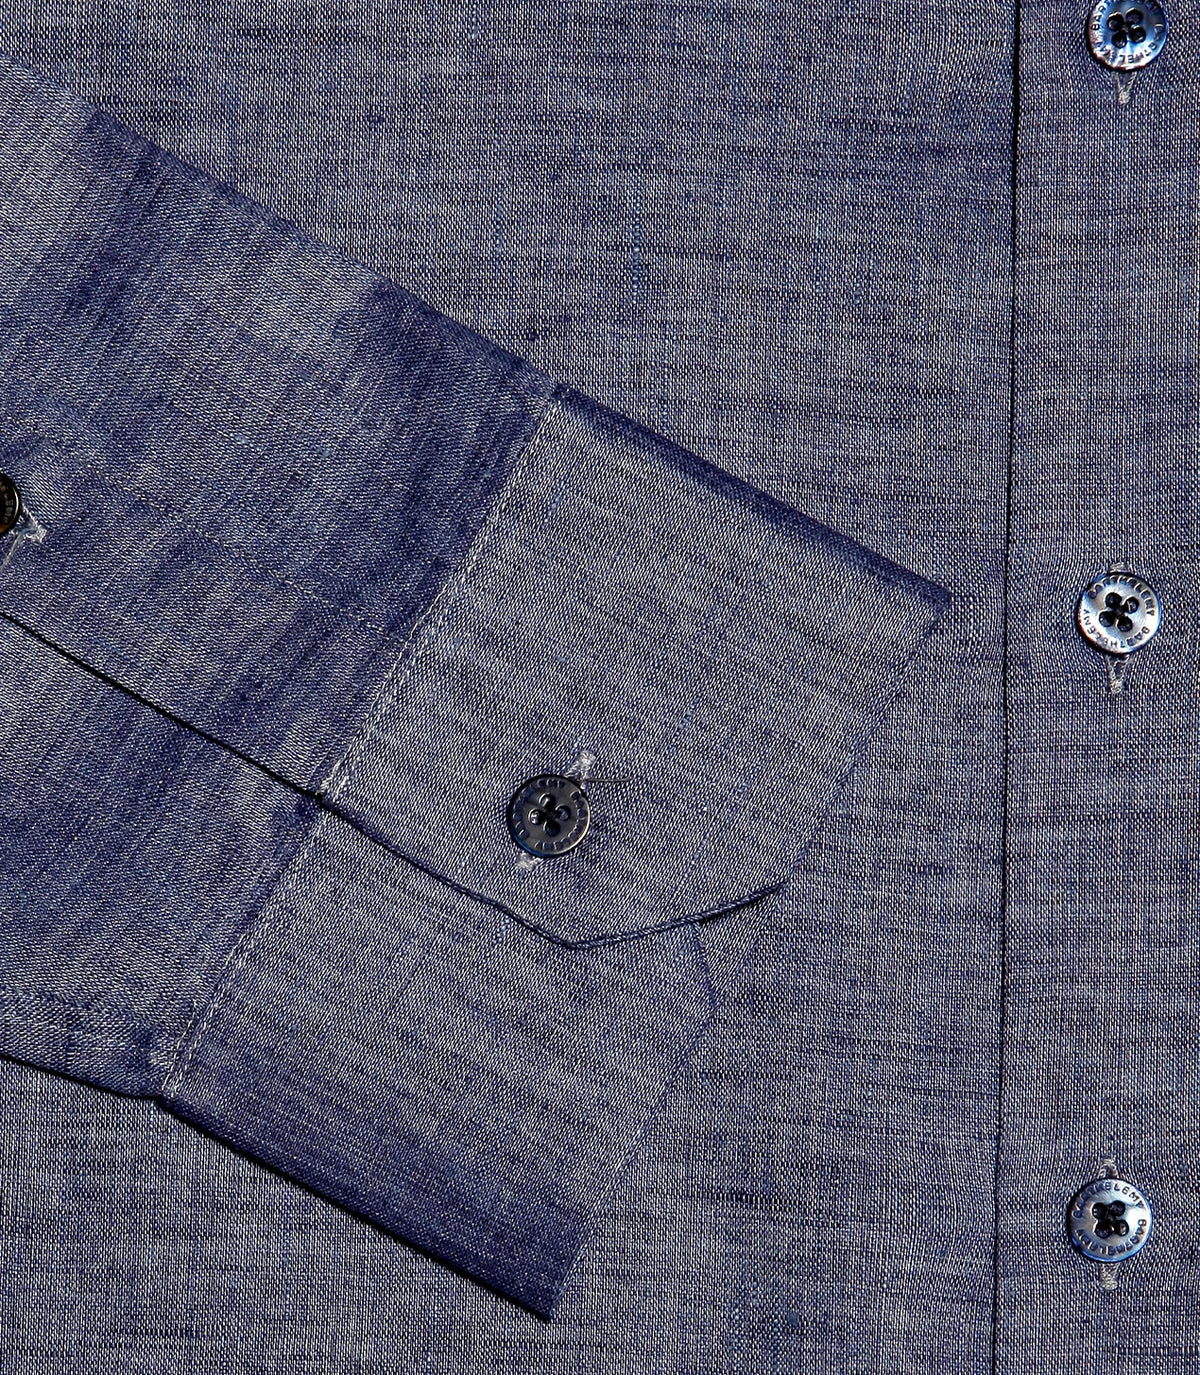 Linen Shirt Albini Blue Jeans - Barthelemy